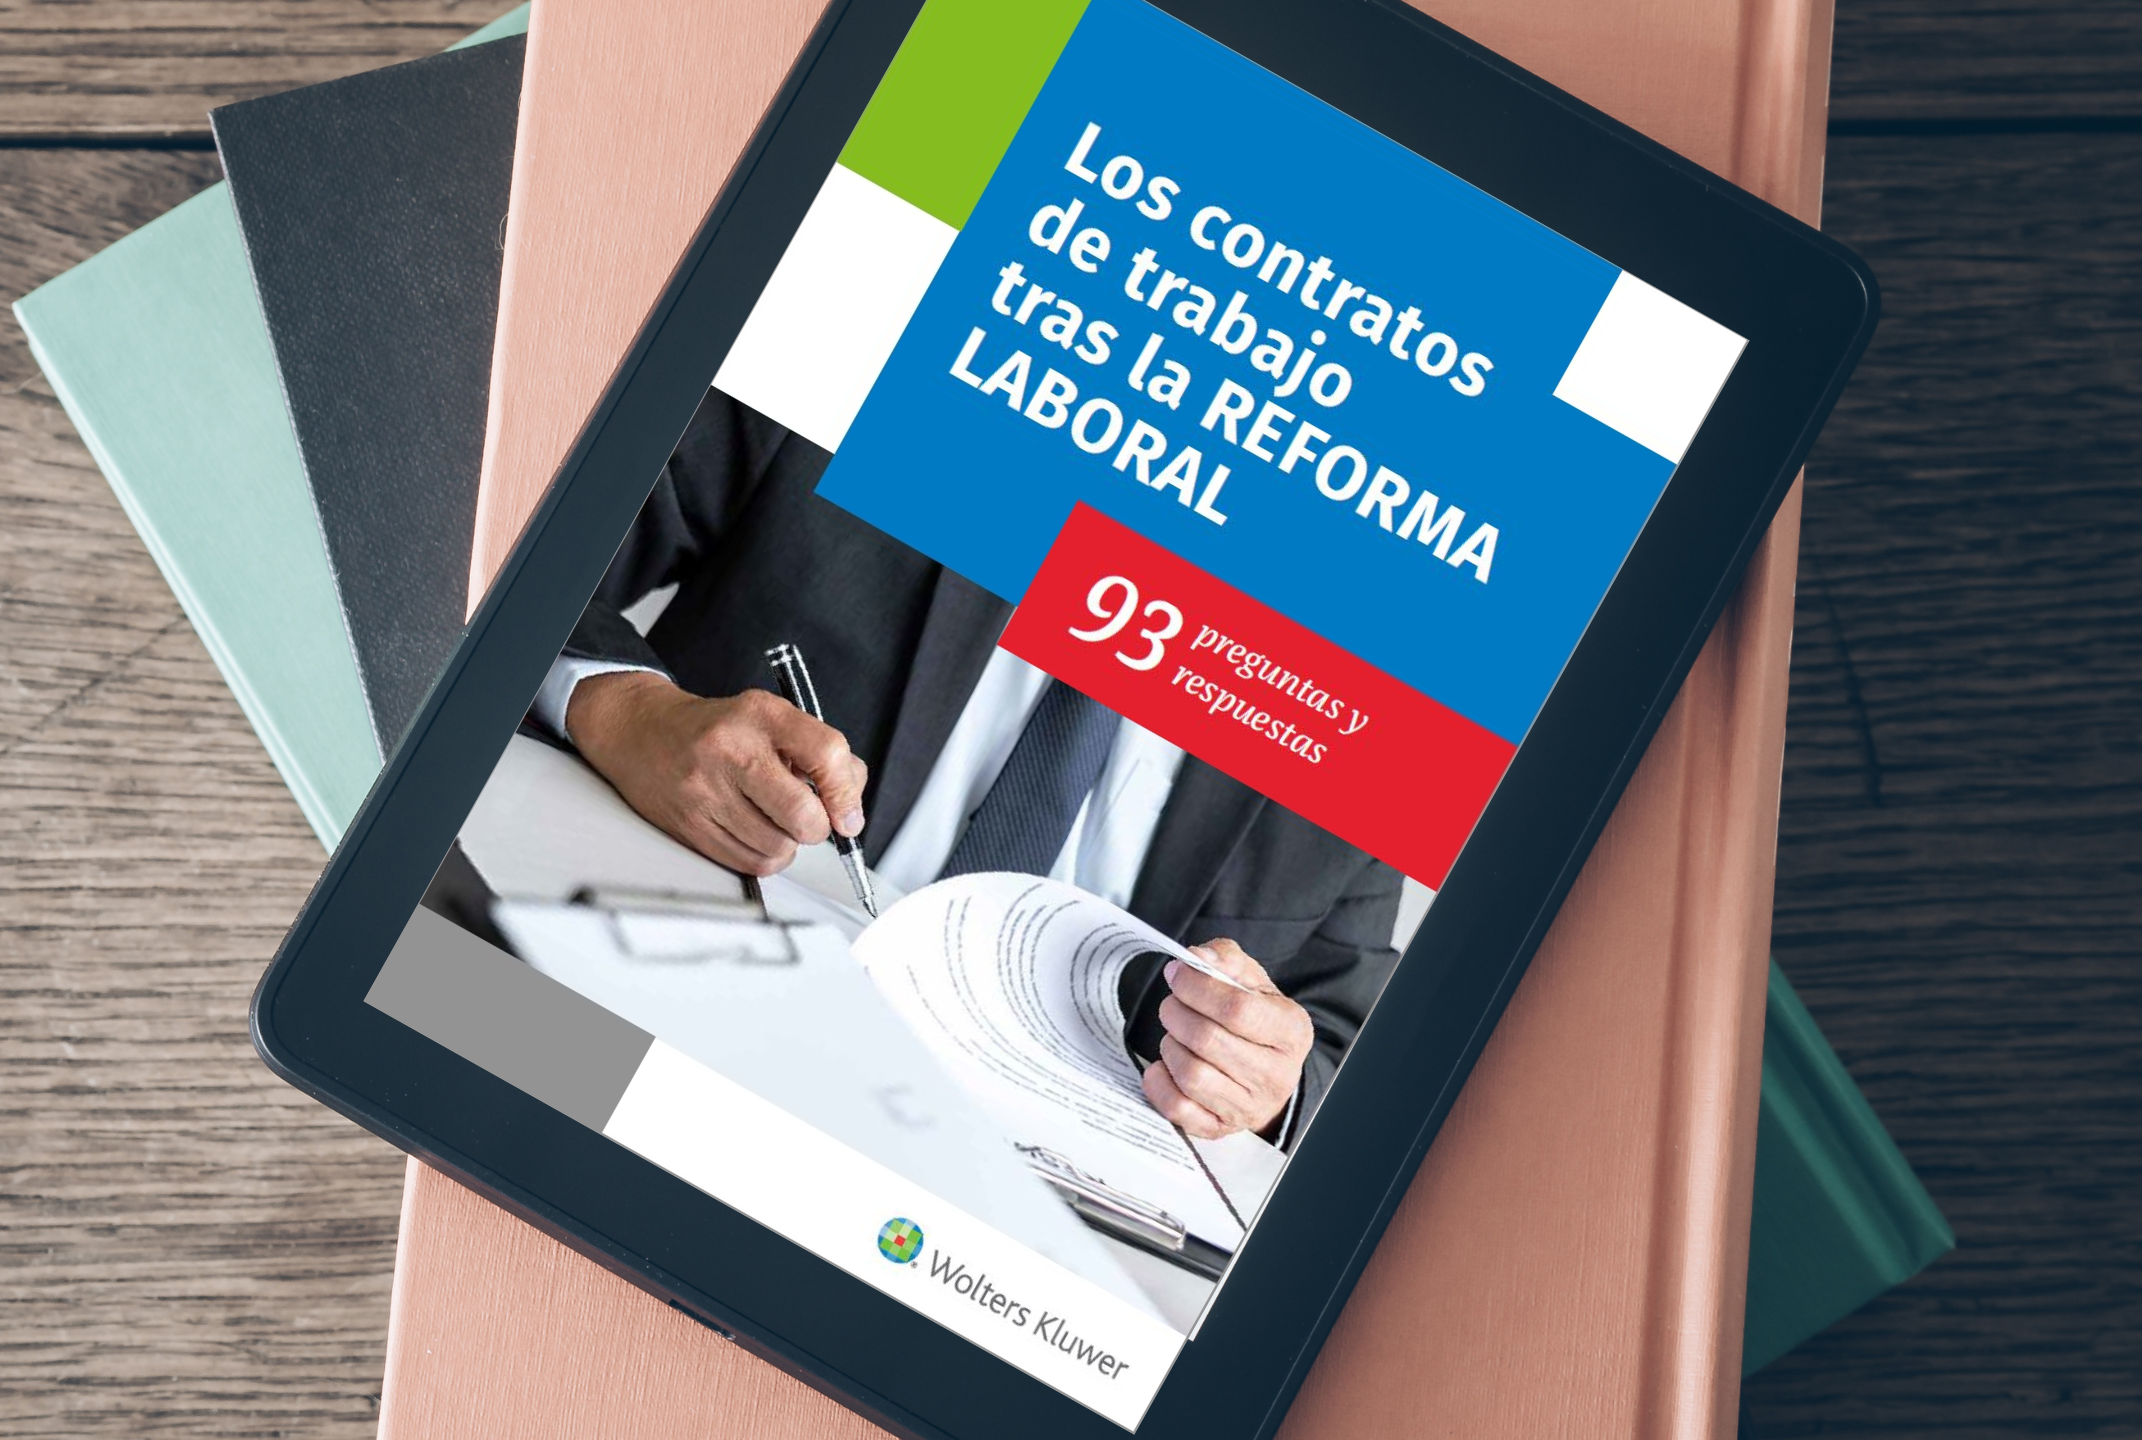 ebook 93 preguntas contratos y reforma laboral